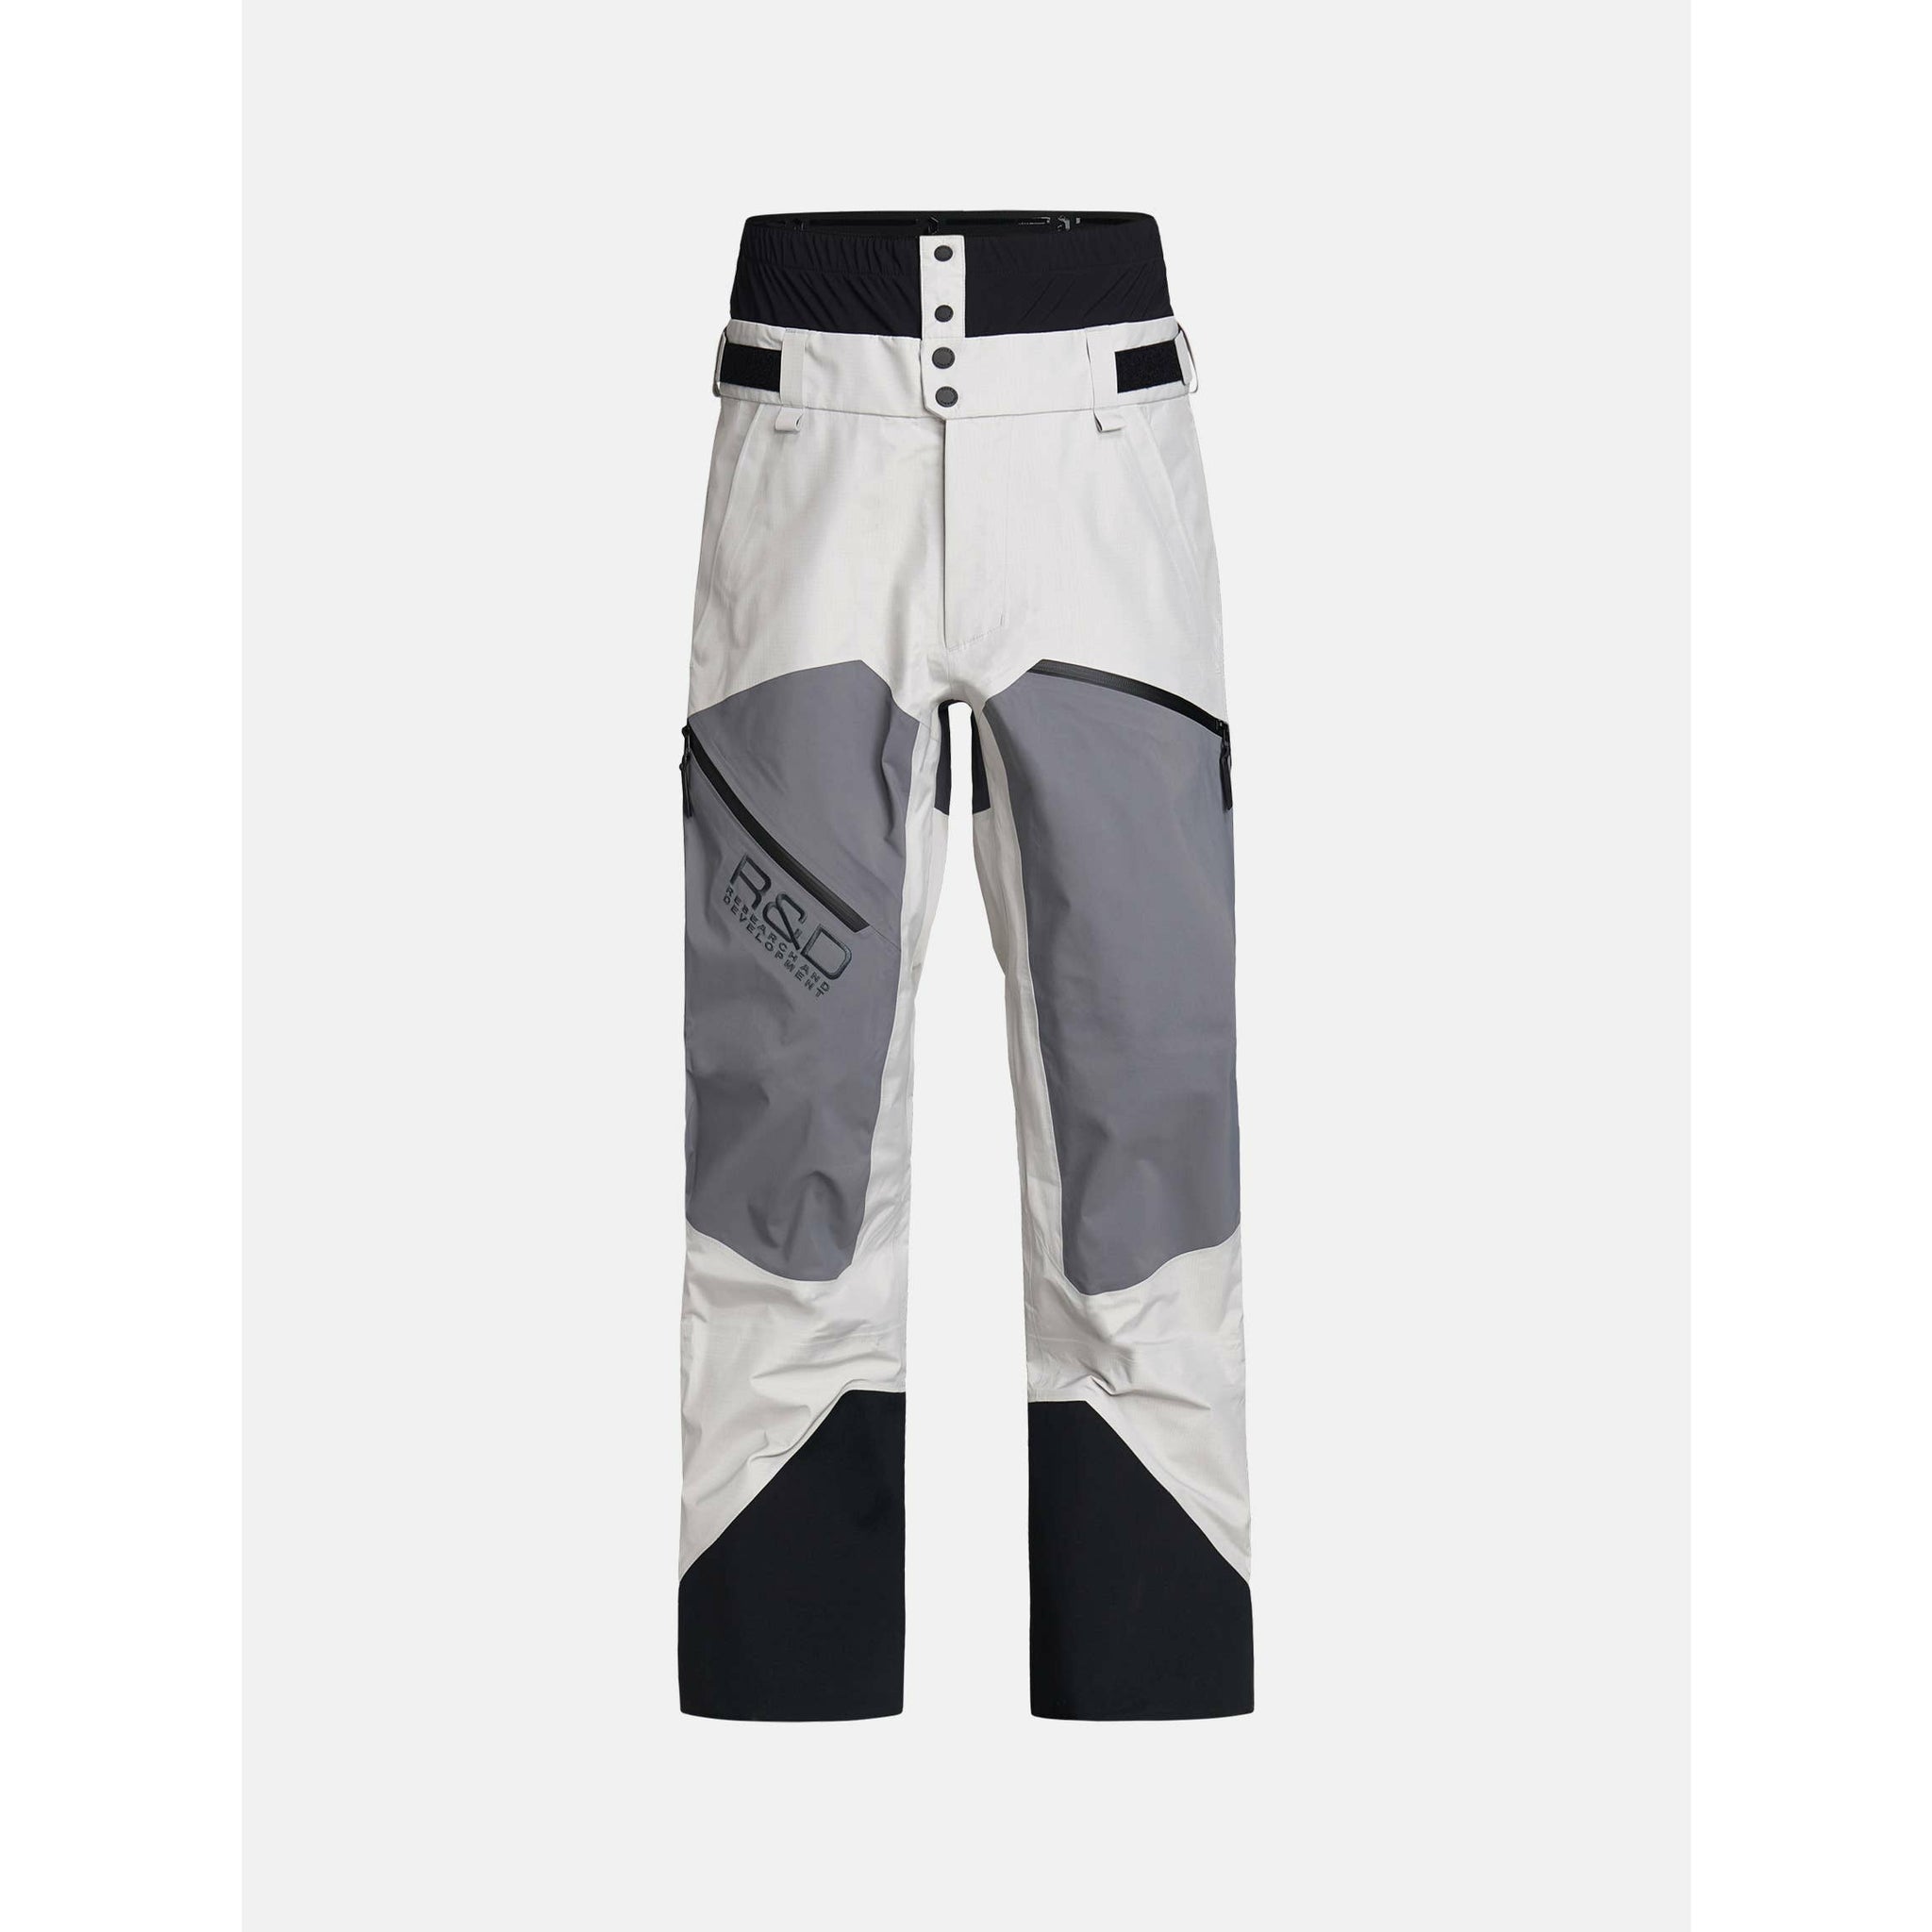 Pantalons de Ski Shielder R&D pour Femmes||Shielder R&D Ski Pants for Women's